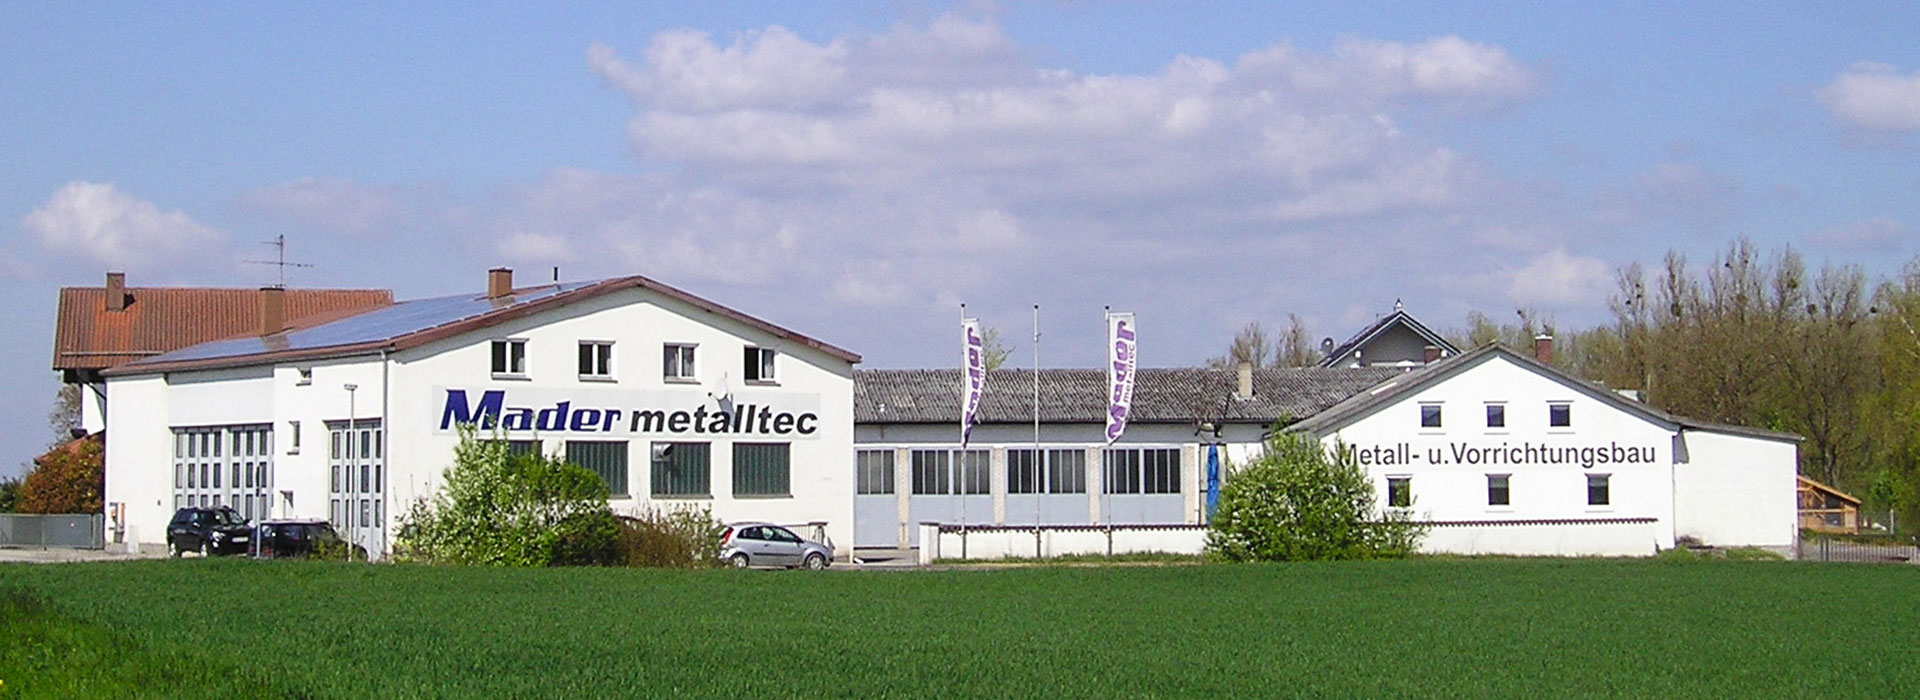 Mader Metalltec in Fischerdorf/Deggendorf